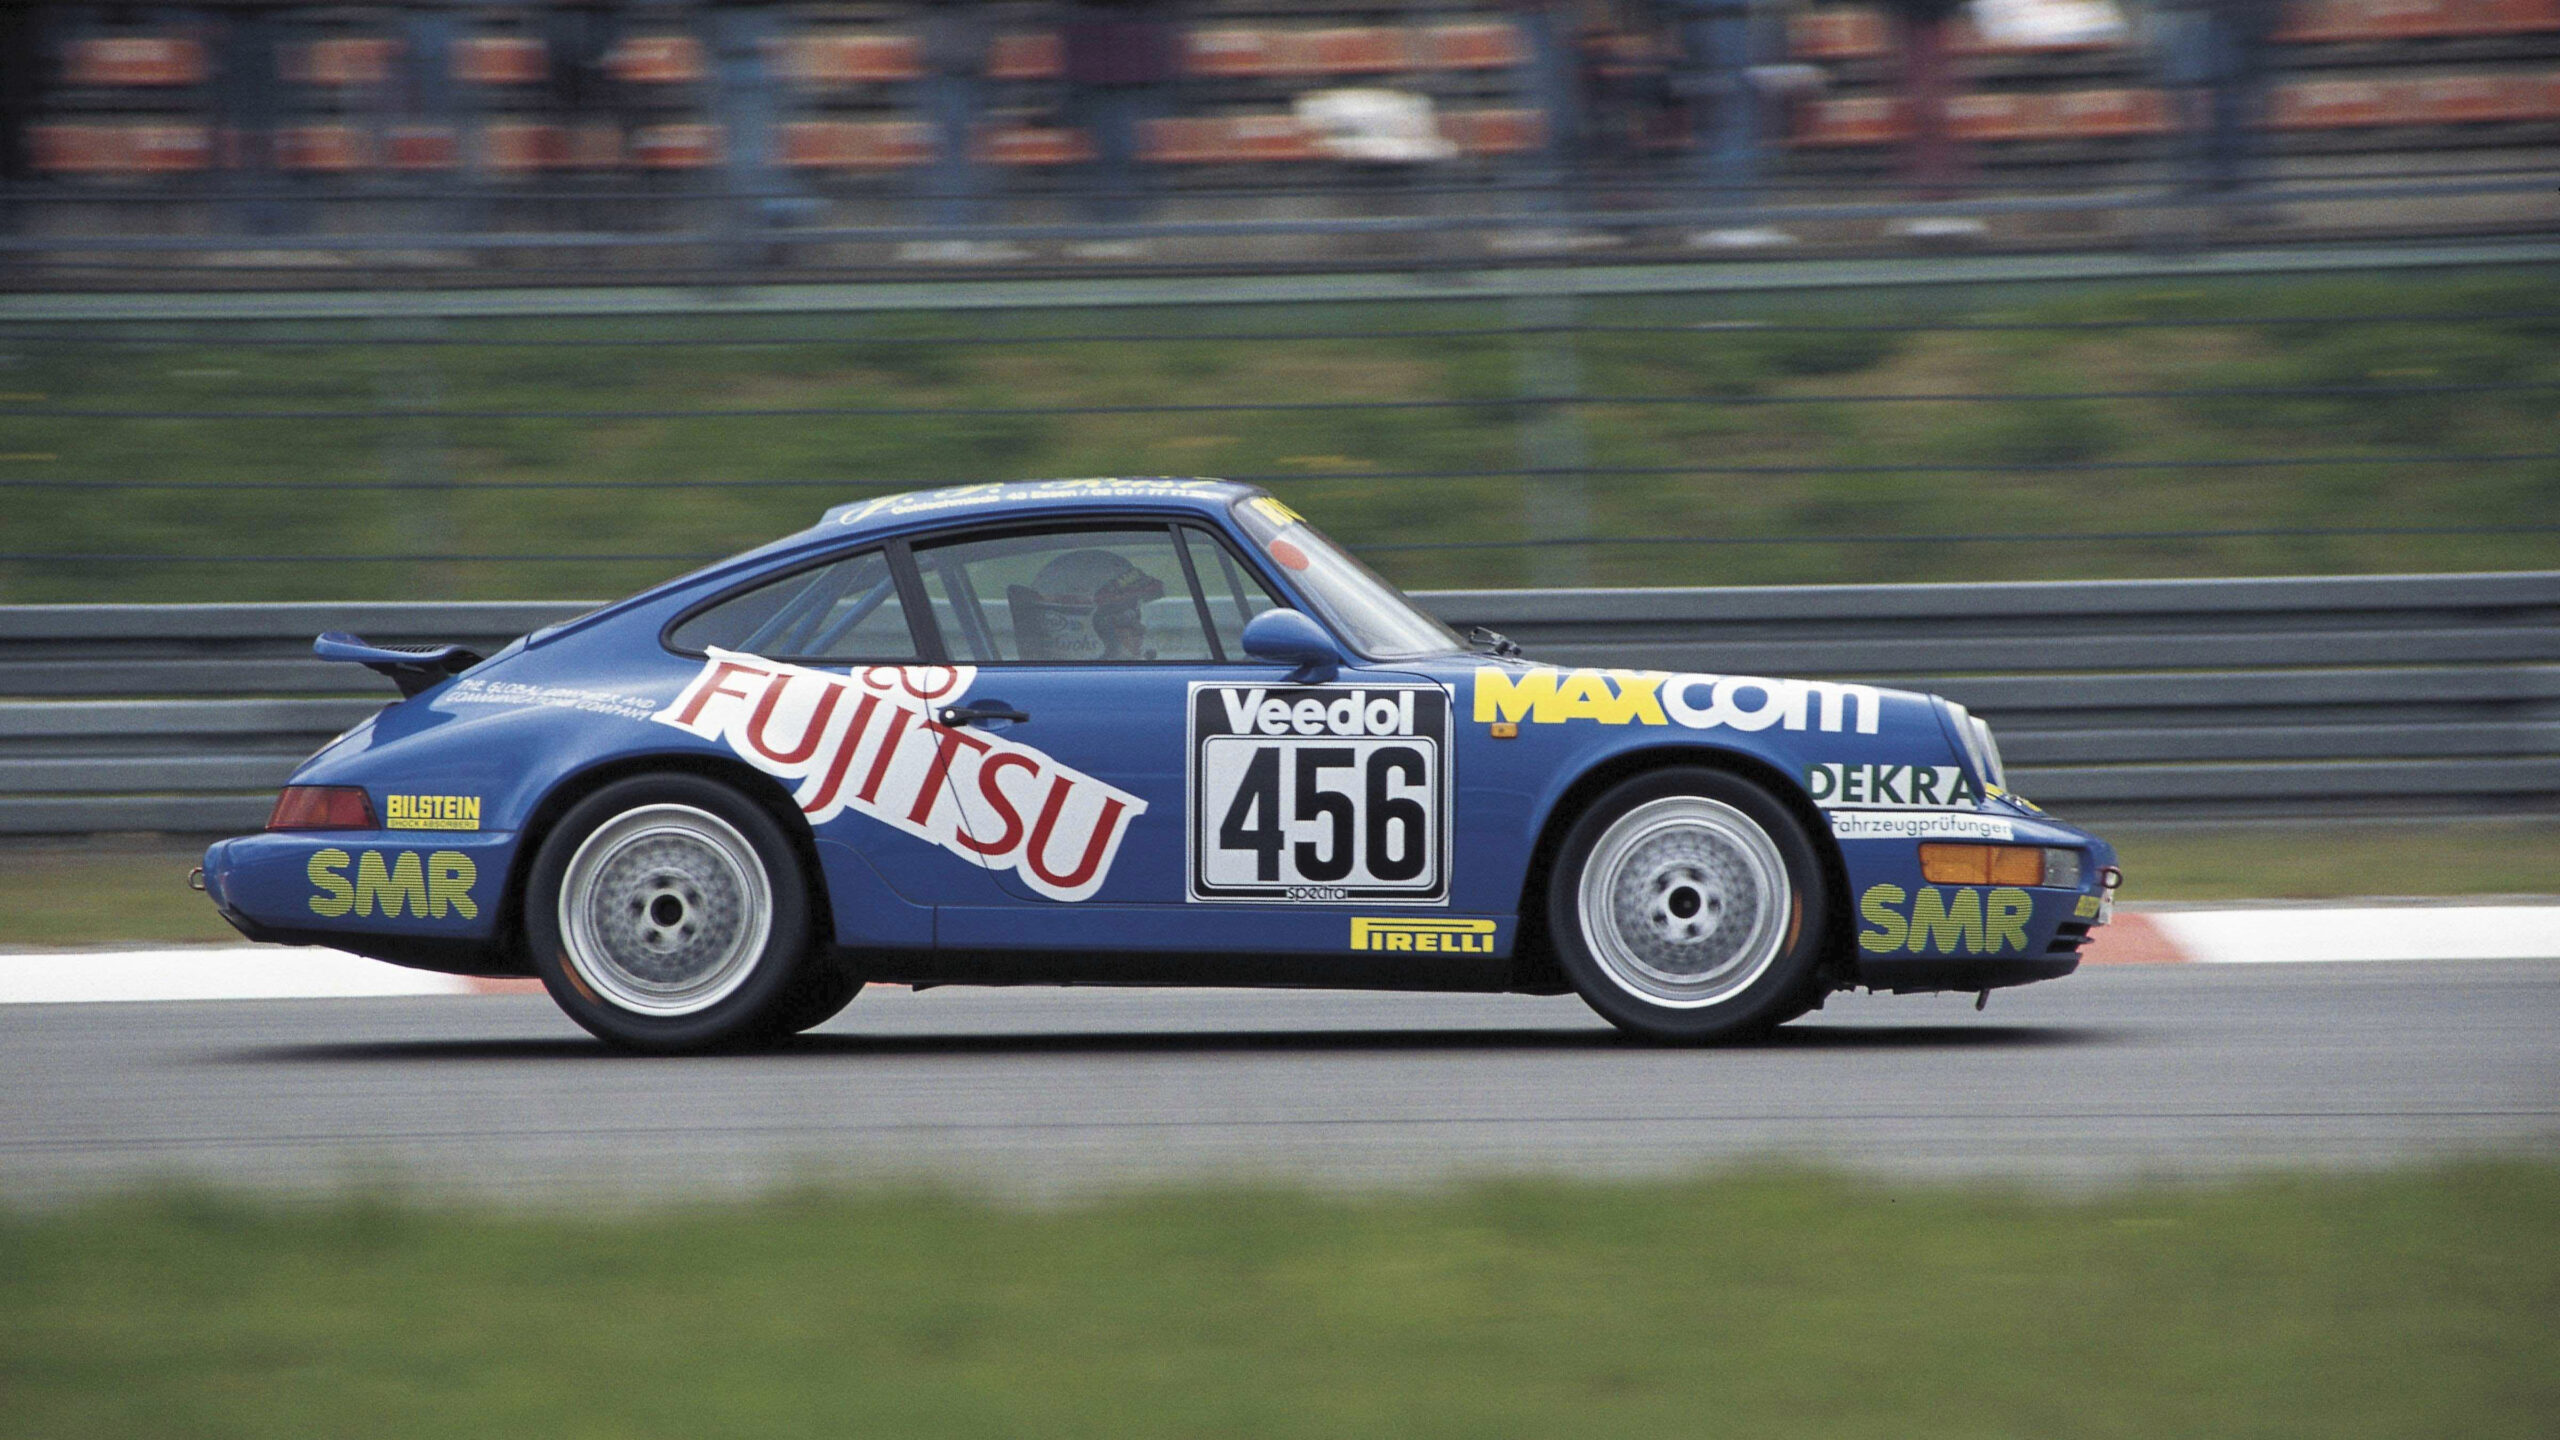 1992-Porsche-Carrera-RS-WPO-ZZZ-96-ZNS-49-9011-Wlazik-Grohs-Katthoefer-Richter.jpg